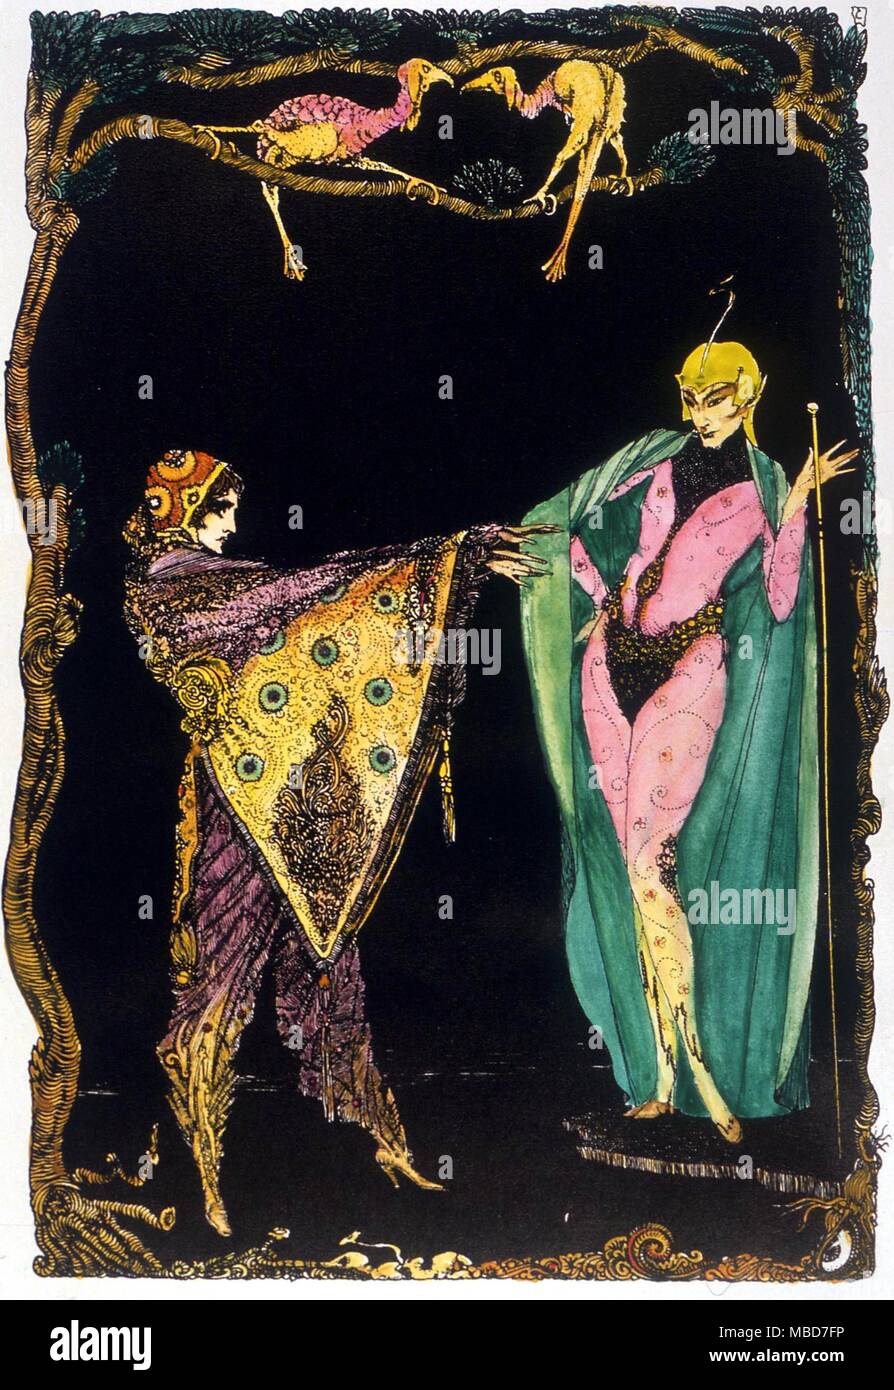 Mephistopheles - Mephisto e Faust. Illustrazione (colorate a mano) da Harruy Clarke, per l'edizione 1925 di Goethe epico, 'Faust'. Foto Stock